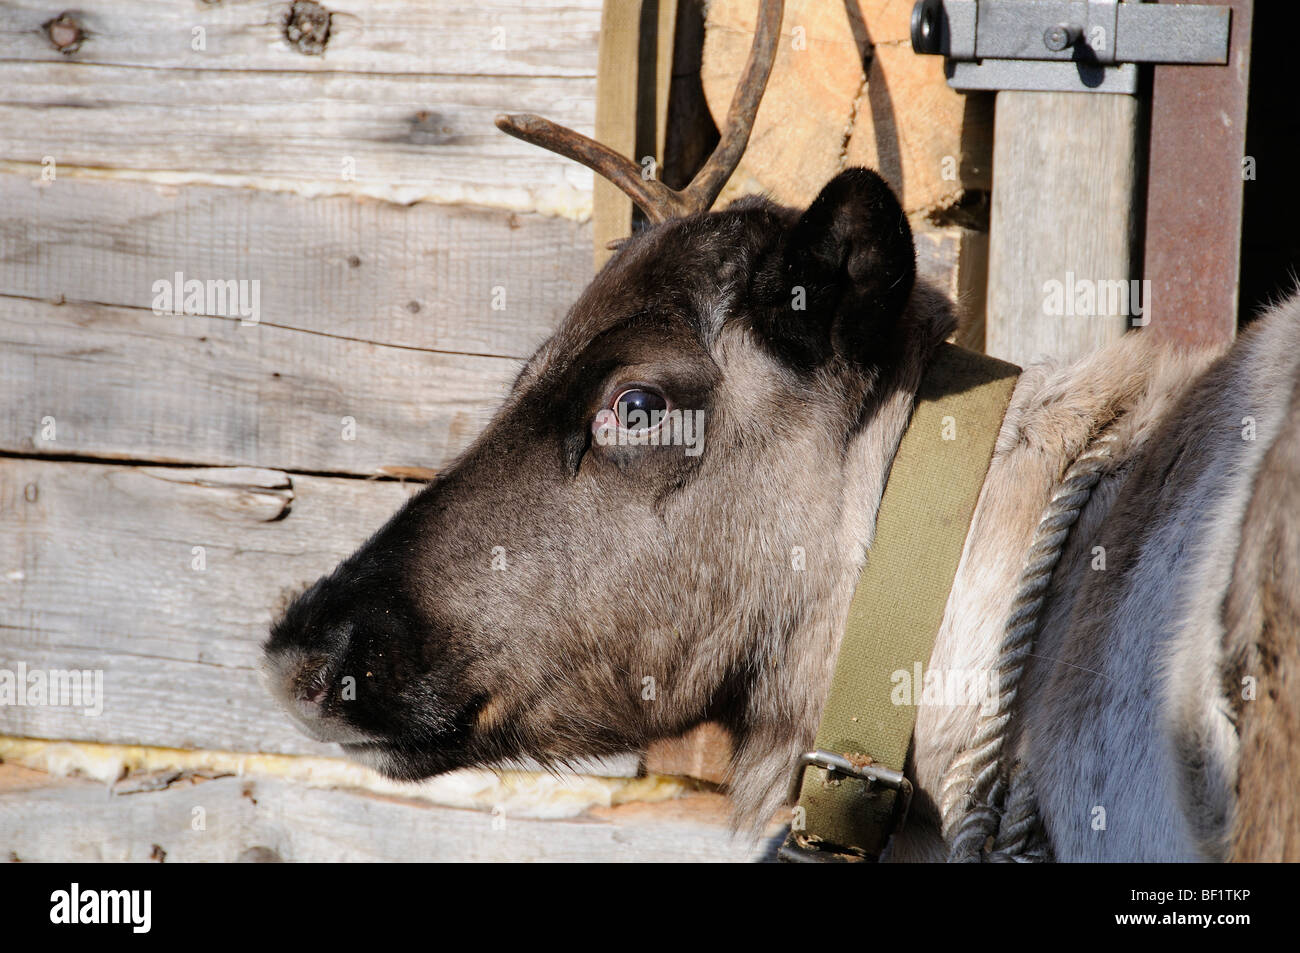 tame, tamely reindeer, Rangifer tarandus, White Sea, Russia Stock Photo